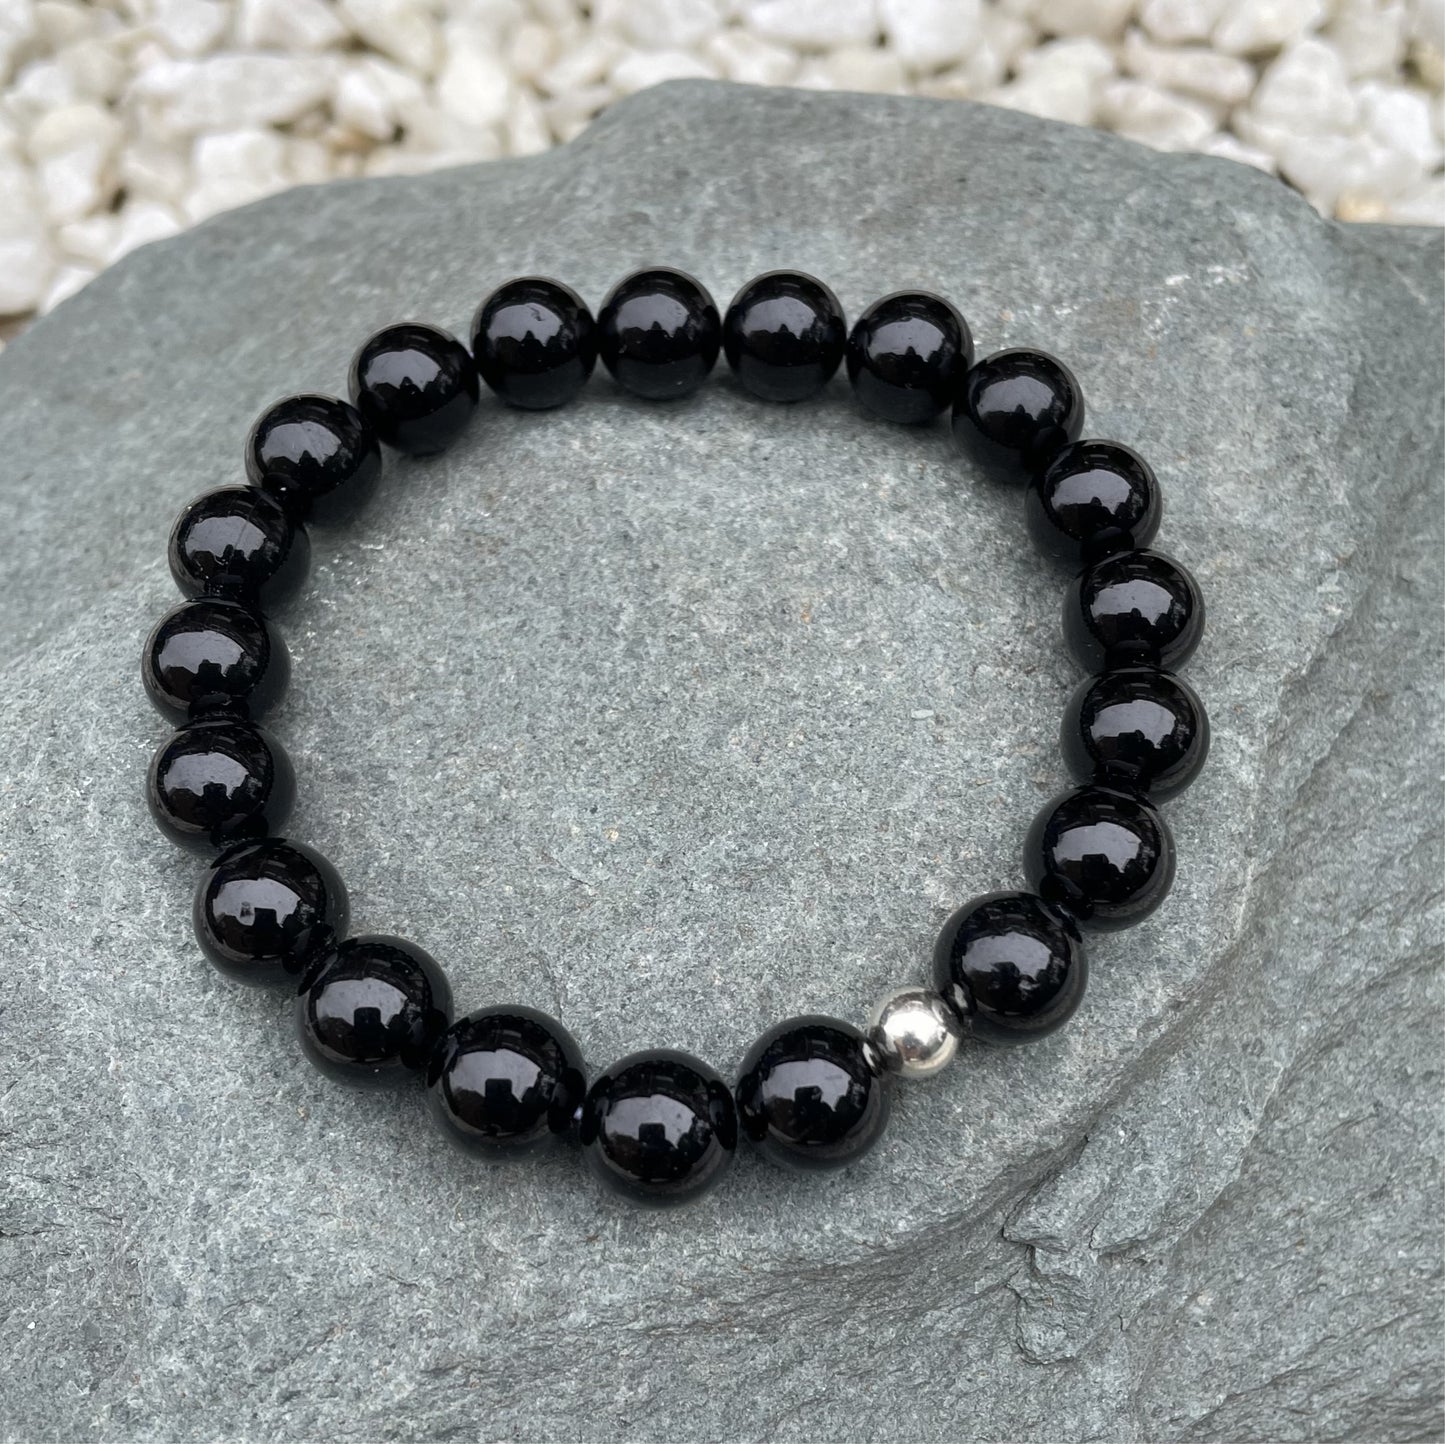 Black crystal bead bracelet on stone